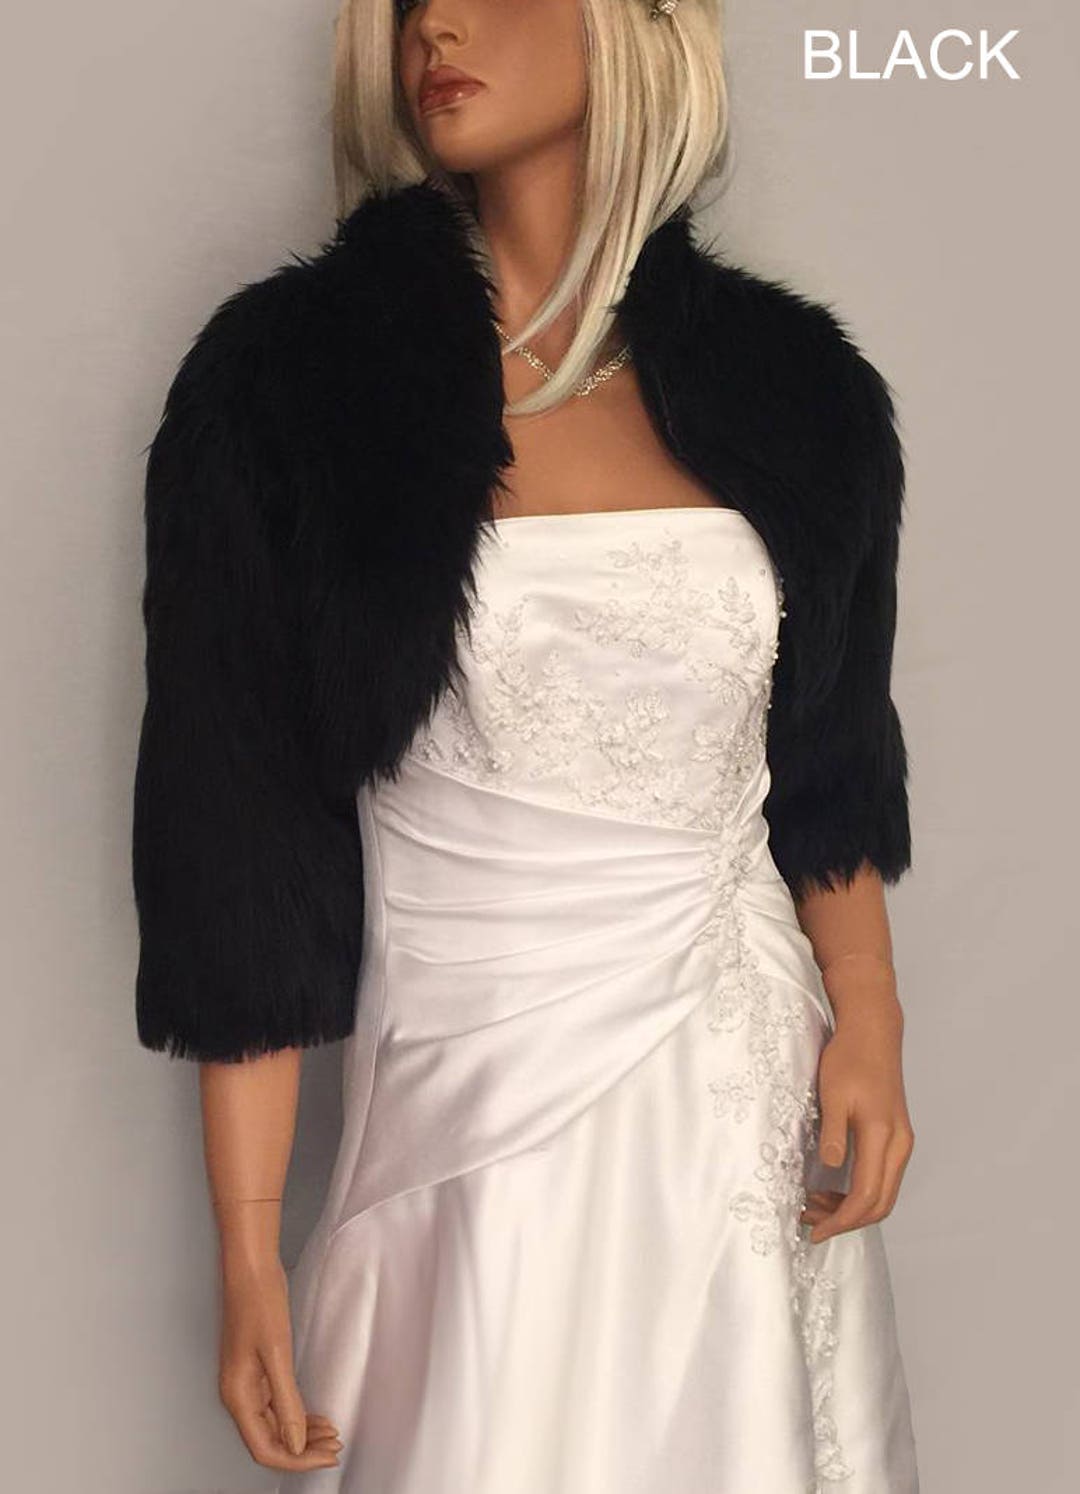 ANTIQUE Art Deco Crystal Rhinestone Bridal Bolero Wrap Shrug Fur